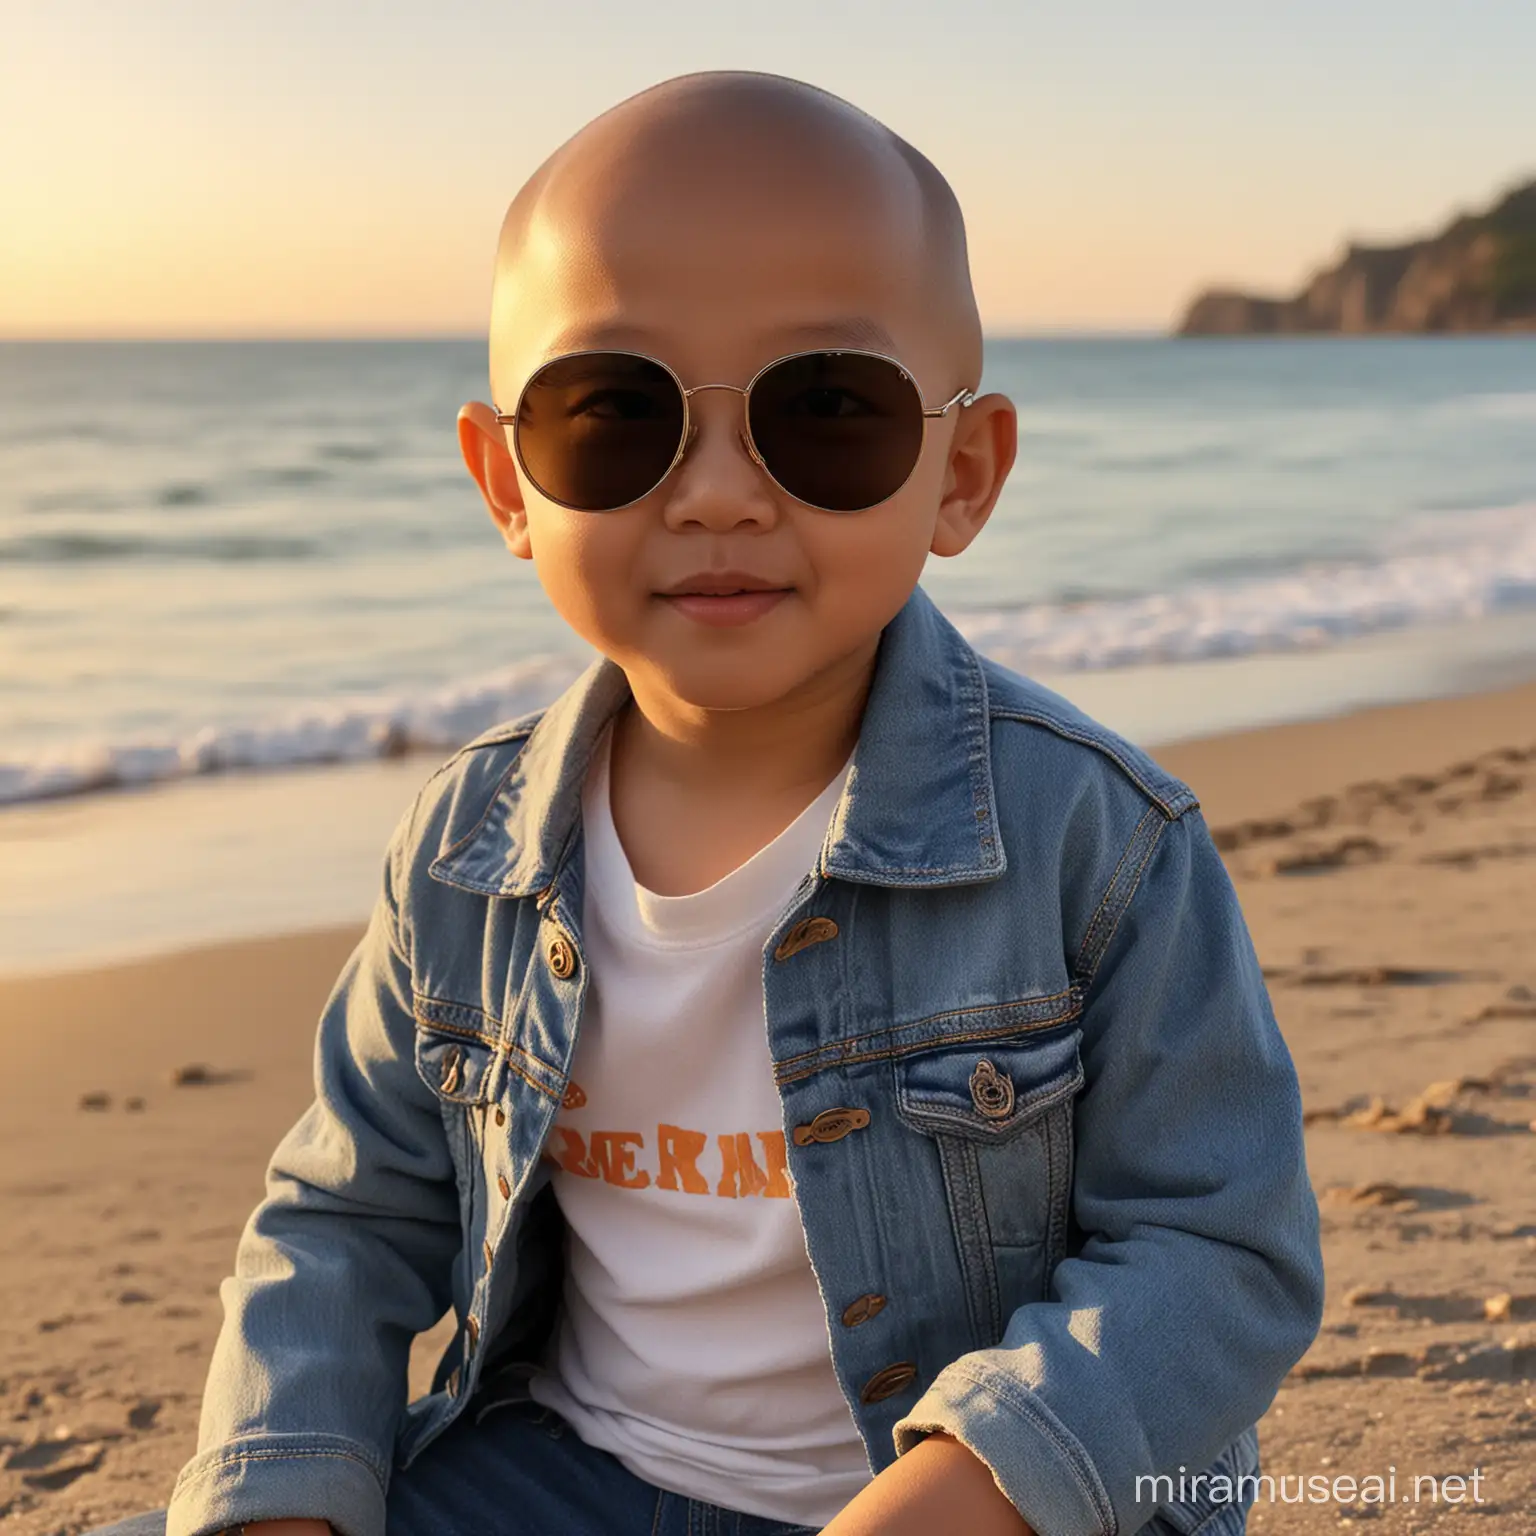 seorang bocah asia umur 3 tahun botak memakai kaca mata hitam bulat,jaket jeans dan celana jeans sedang duduk di tepi pantai sore hari matahari terbenam,dan sangat detail, sangat jernih, resolusi tinggi, penuh warna.